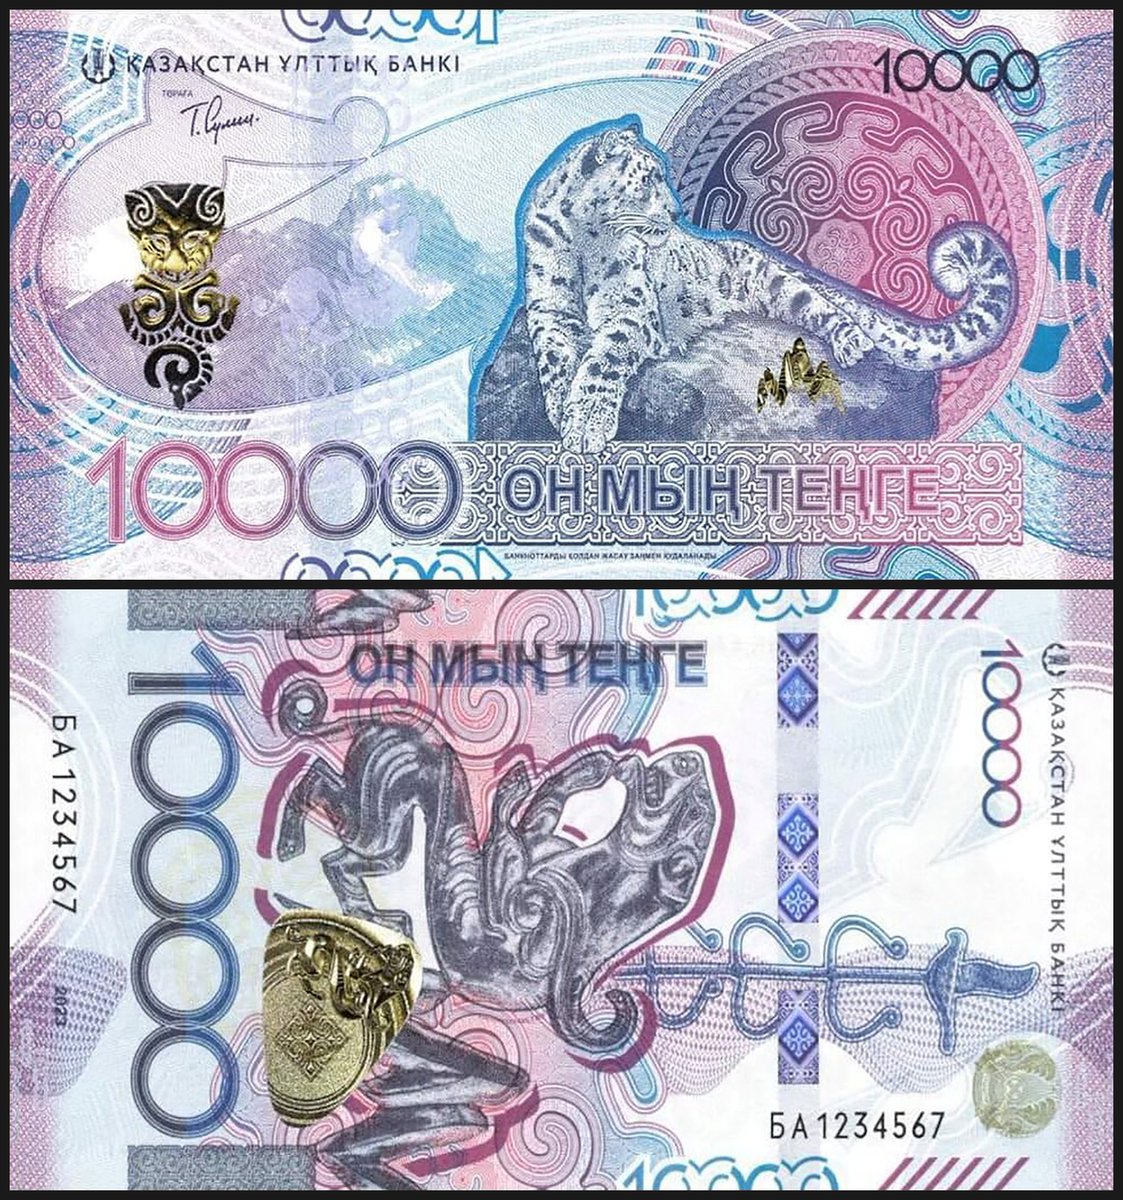 カザフスタン今回の新紙幣も結構攻めたデザインしてて好き
発行されたらほしい